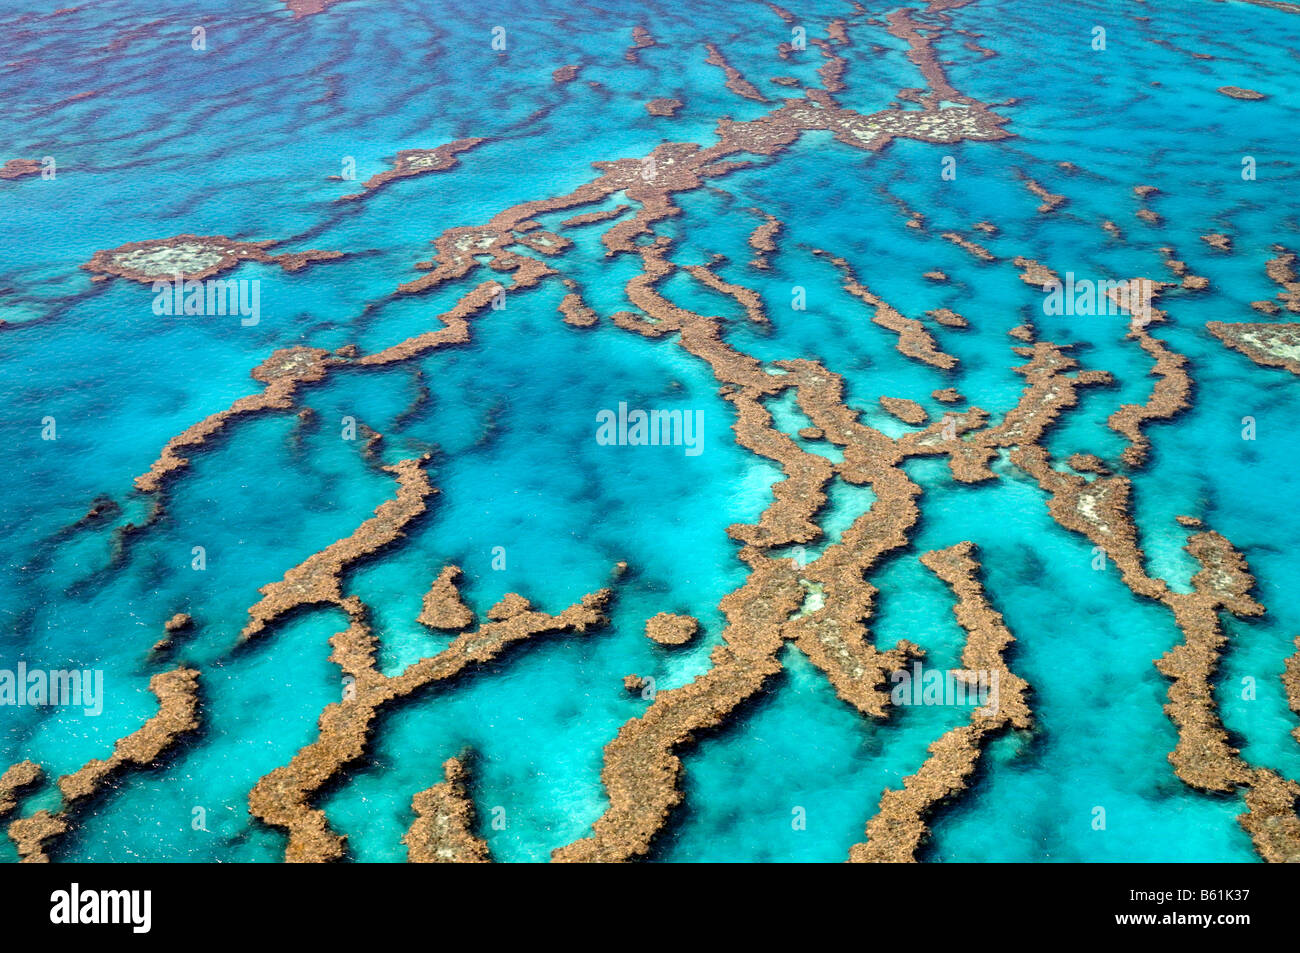 Riffe und Atolle des Great Barrier Reef, Australien Stockfoto